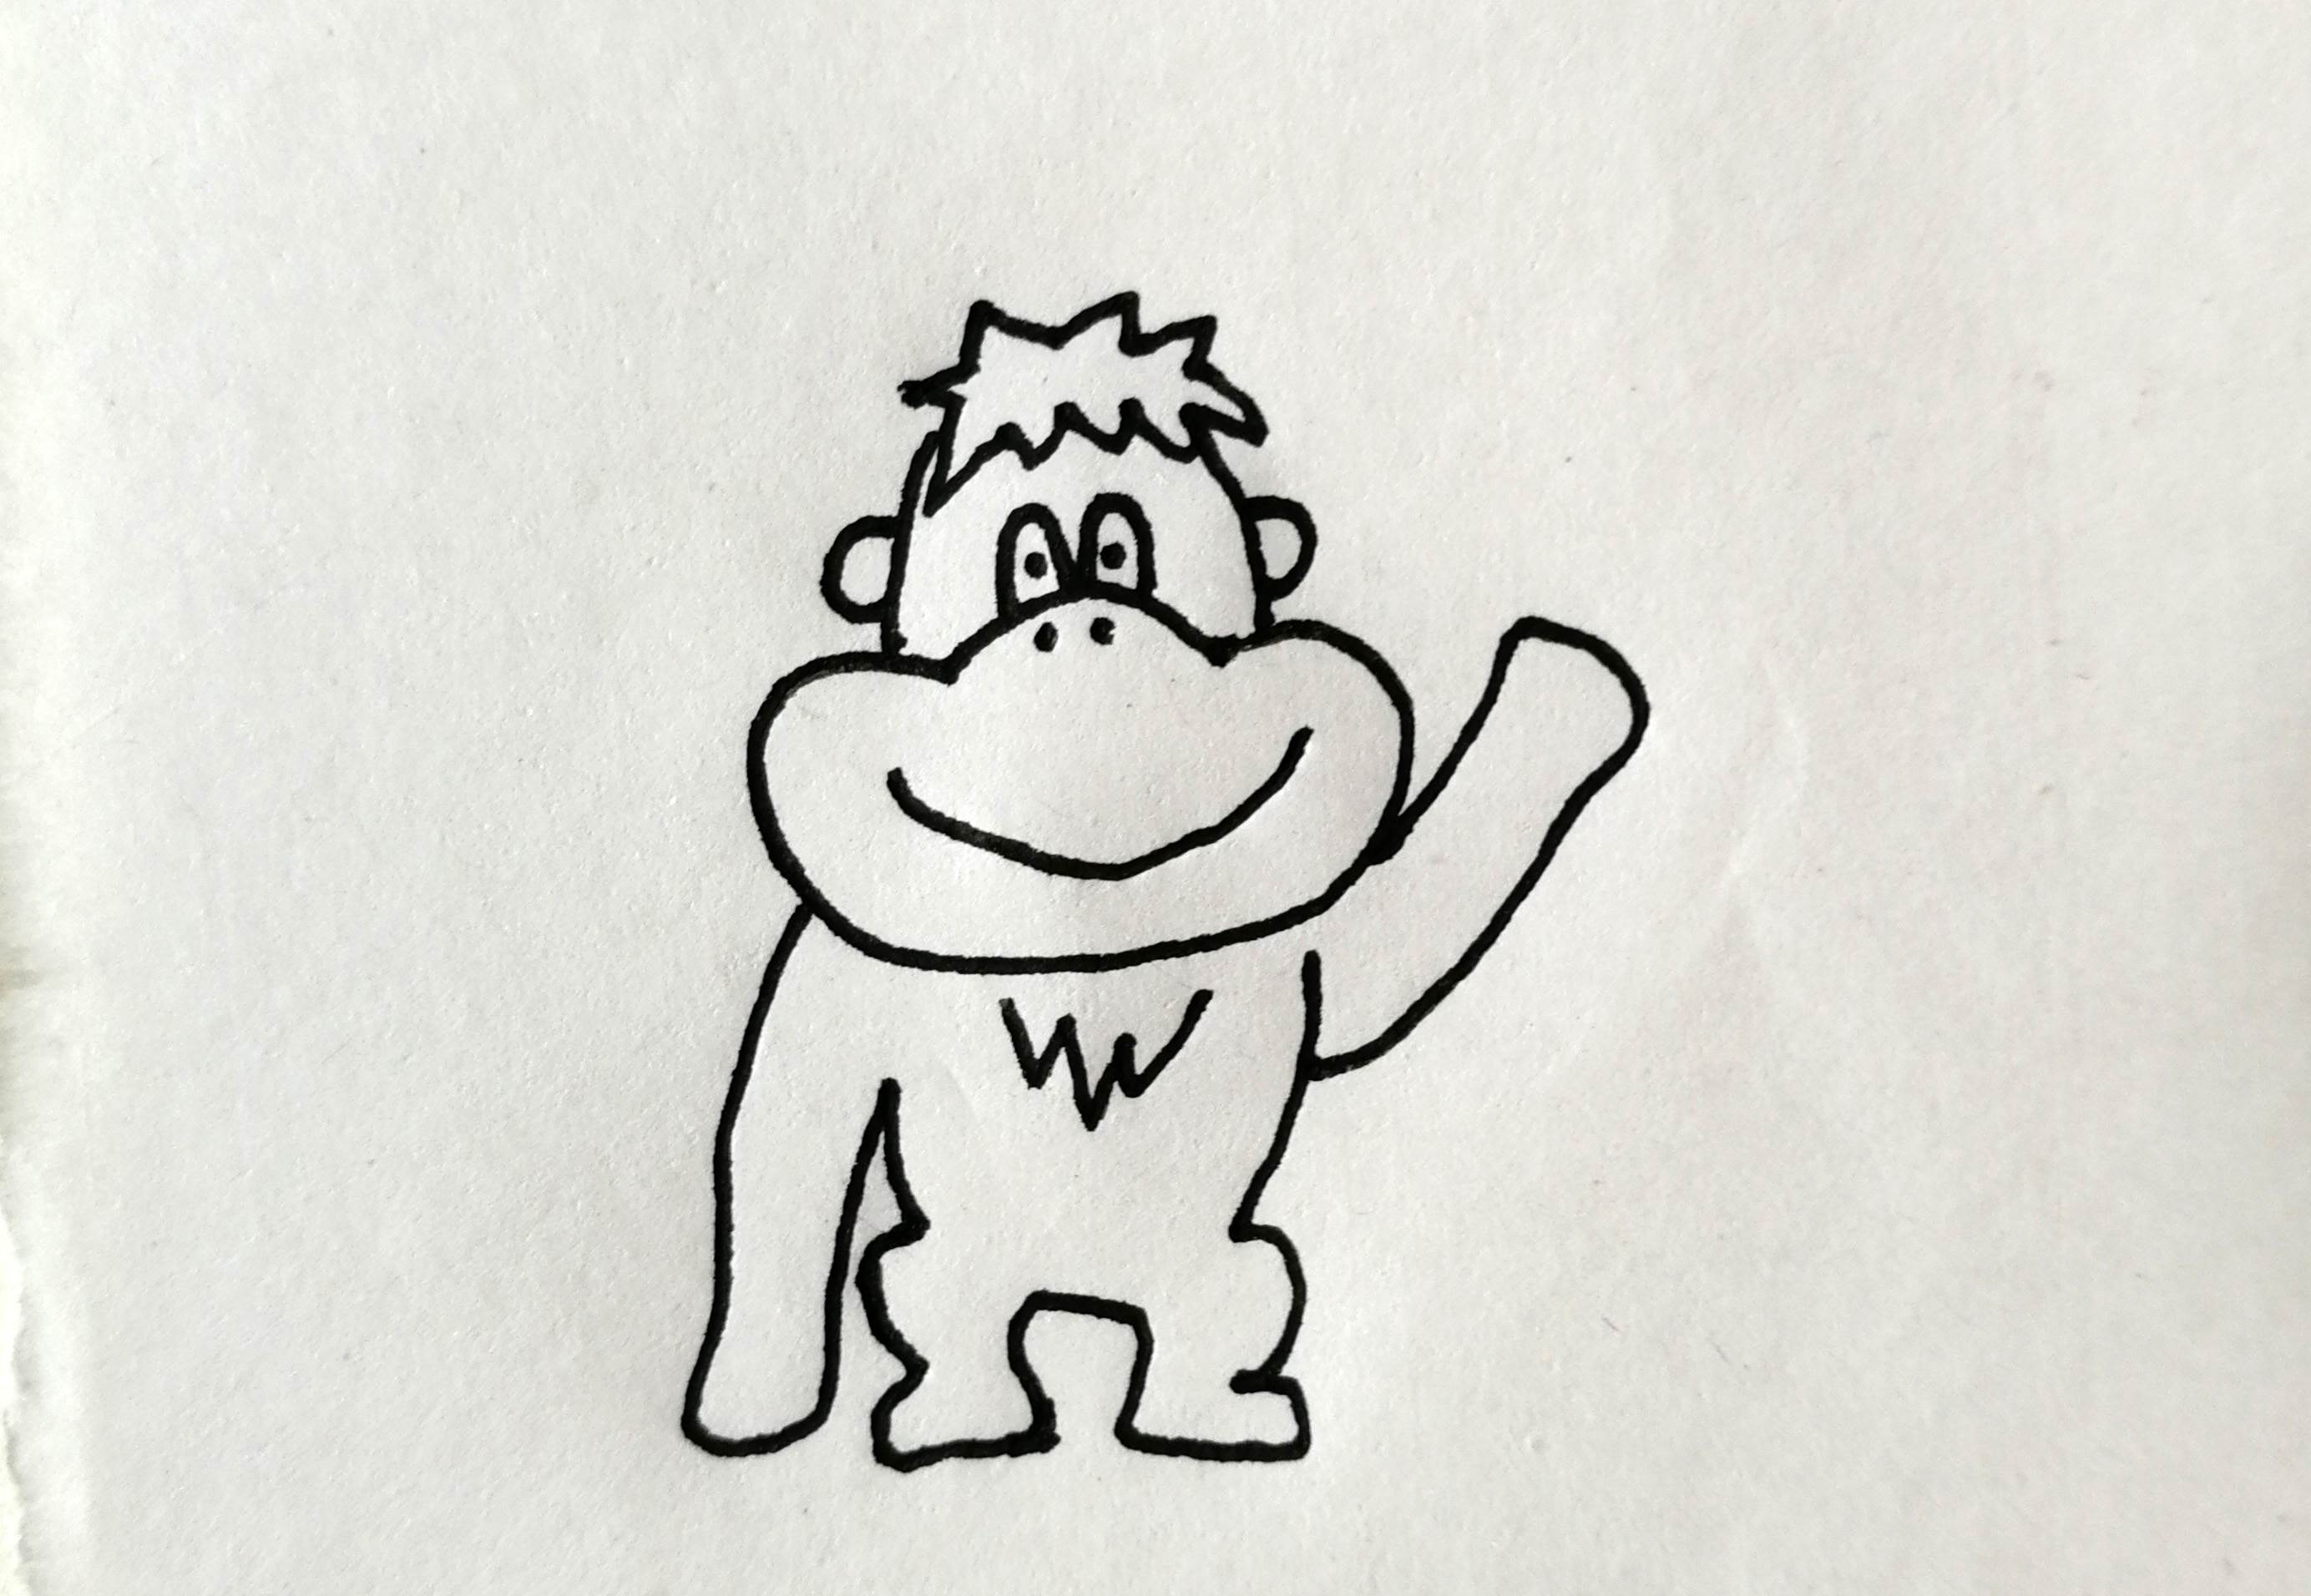 大猩猩的简笔画 儿童图片